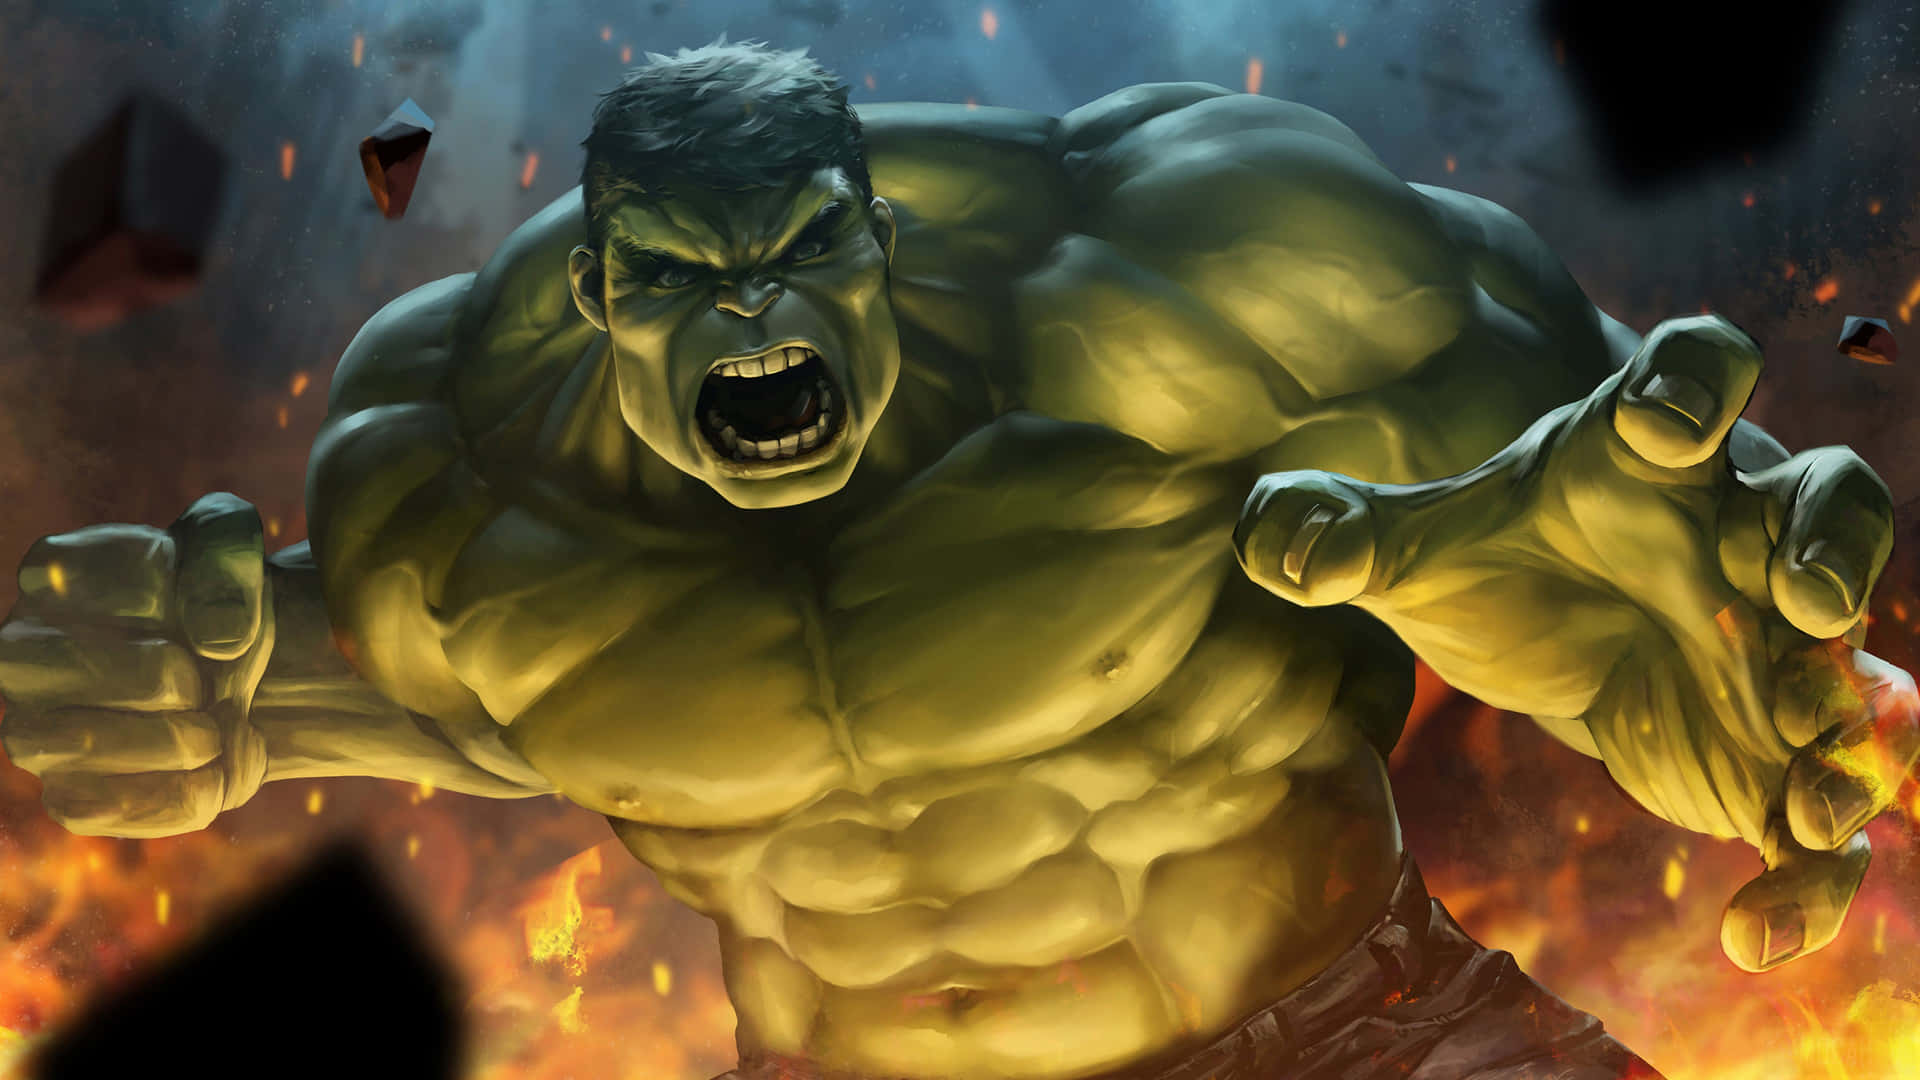 Derunglaubliche Hulk Zerstört Die Stadt.